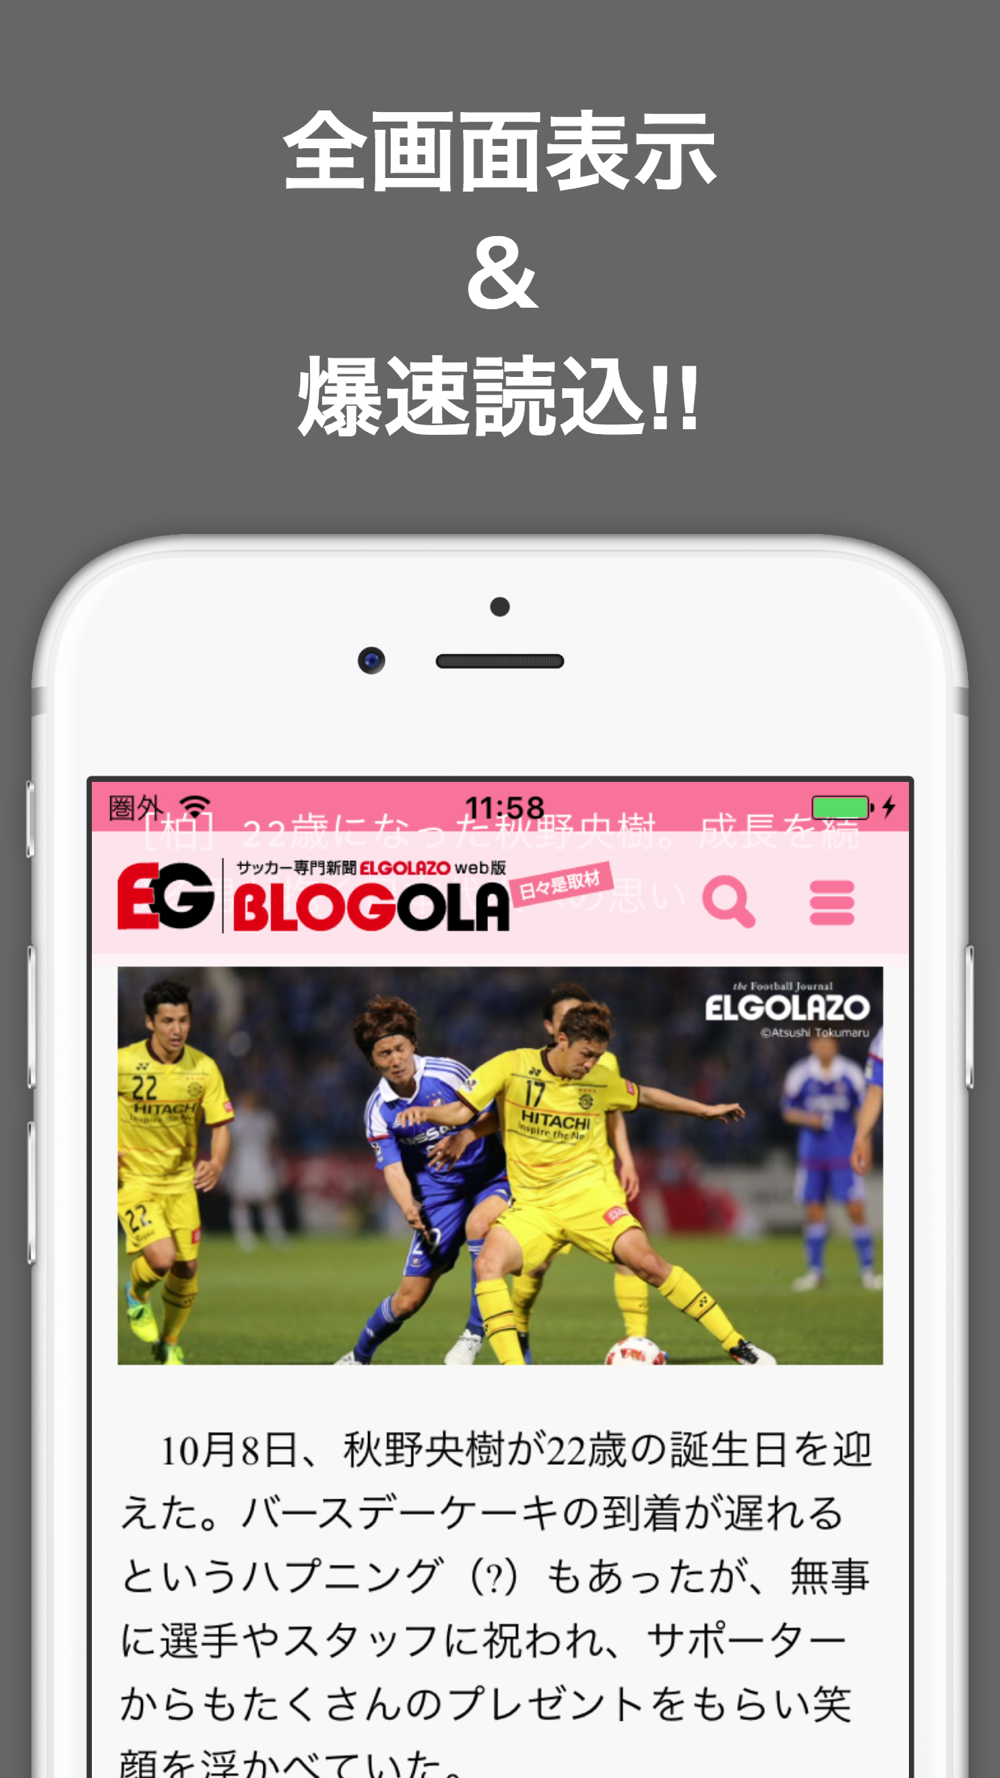 ブログまとめニュース速報 For 柏レイソル Free Download App For Iphone Steprimo Com